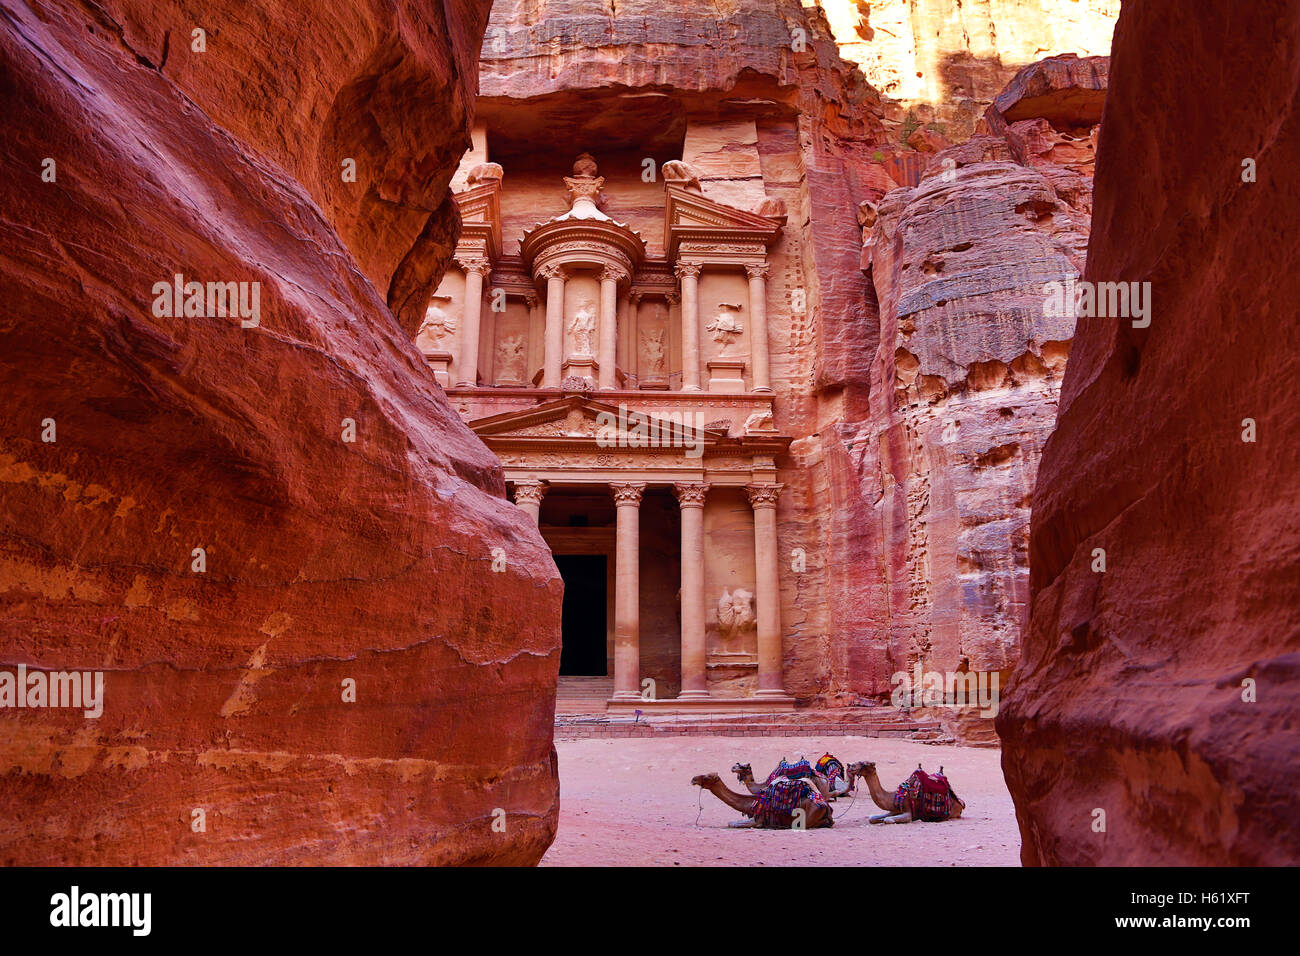 View of the Treasury, Al-Khazneh, from the Siq, Petra, Jordan Stock Photo